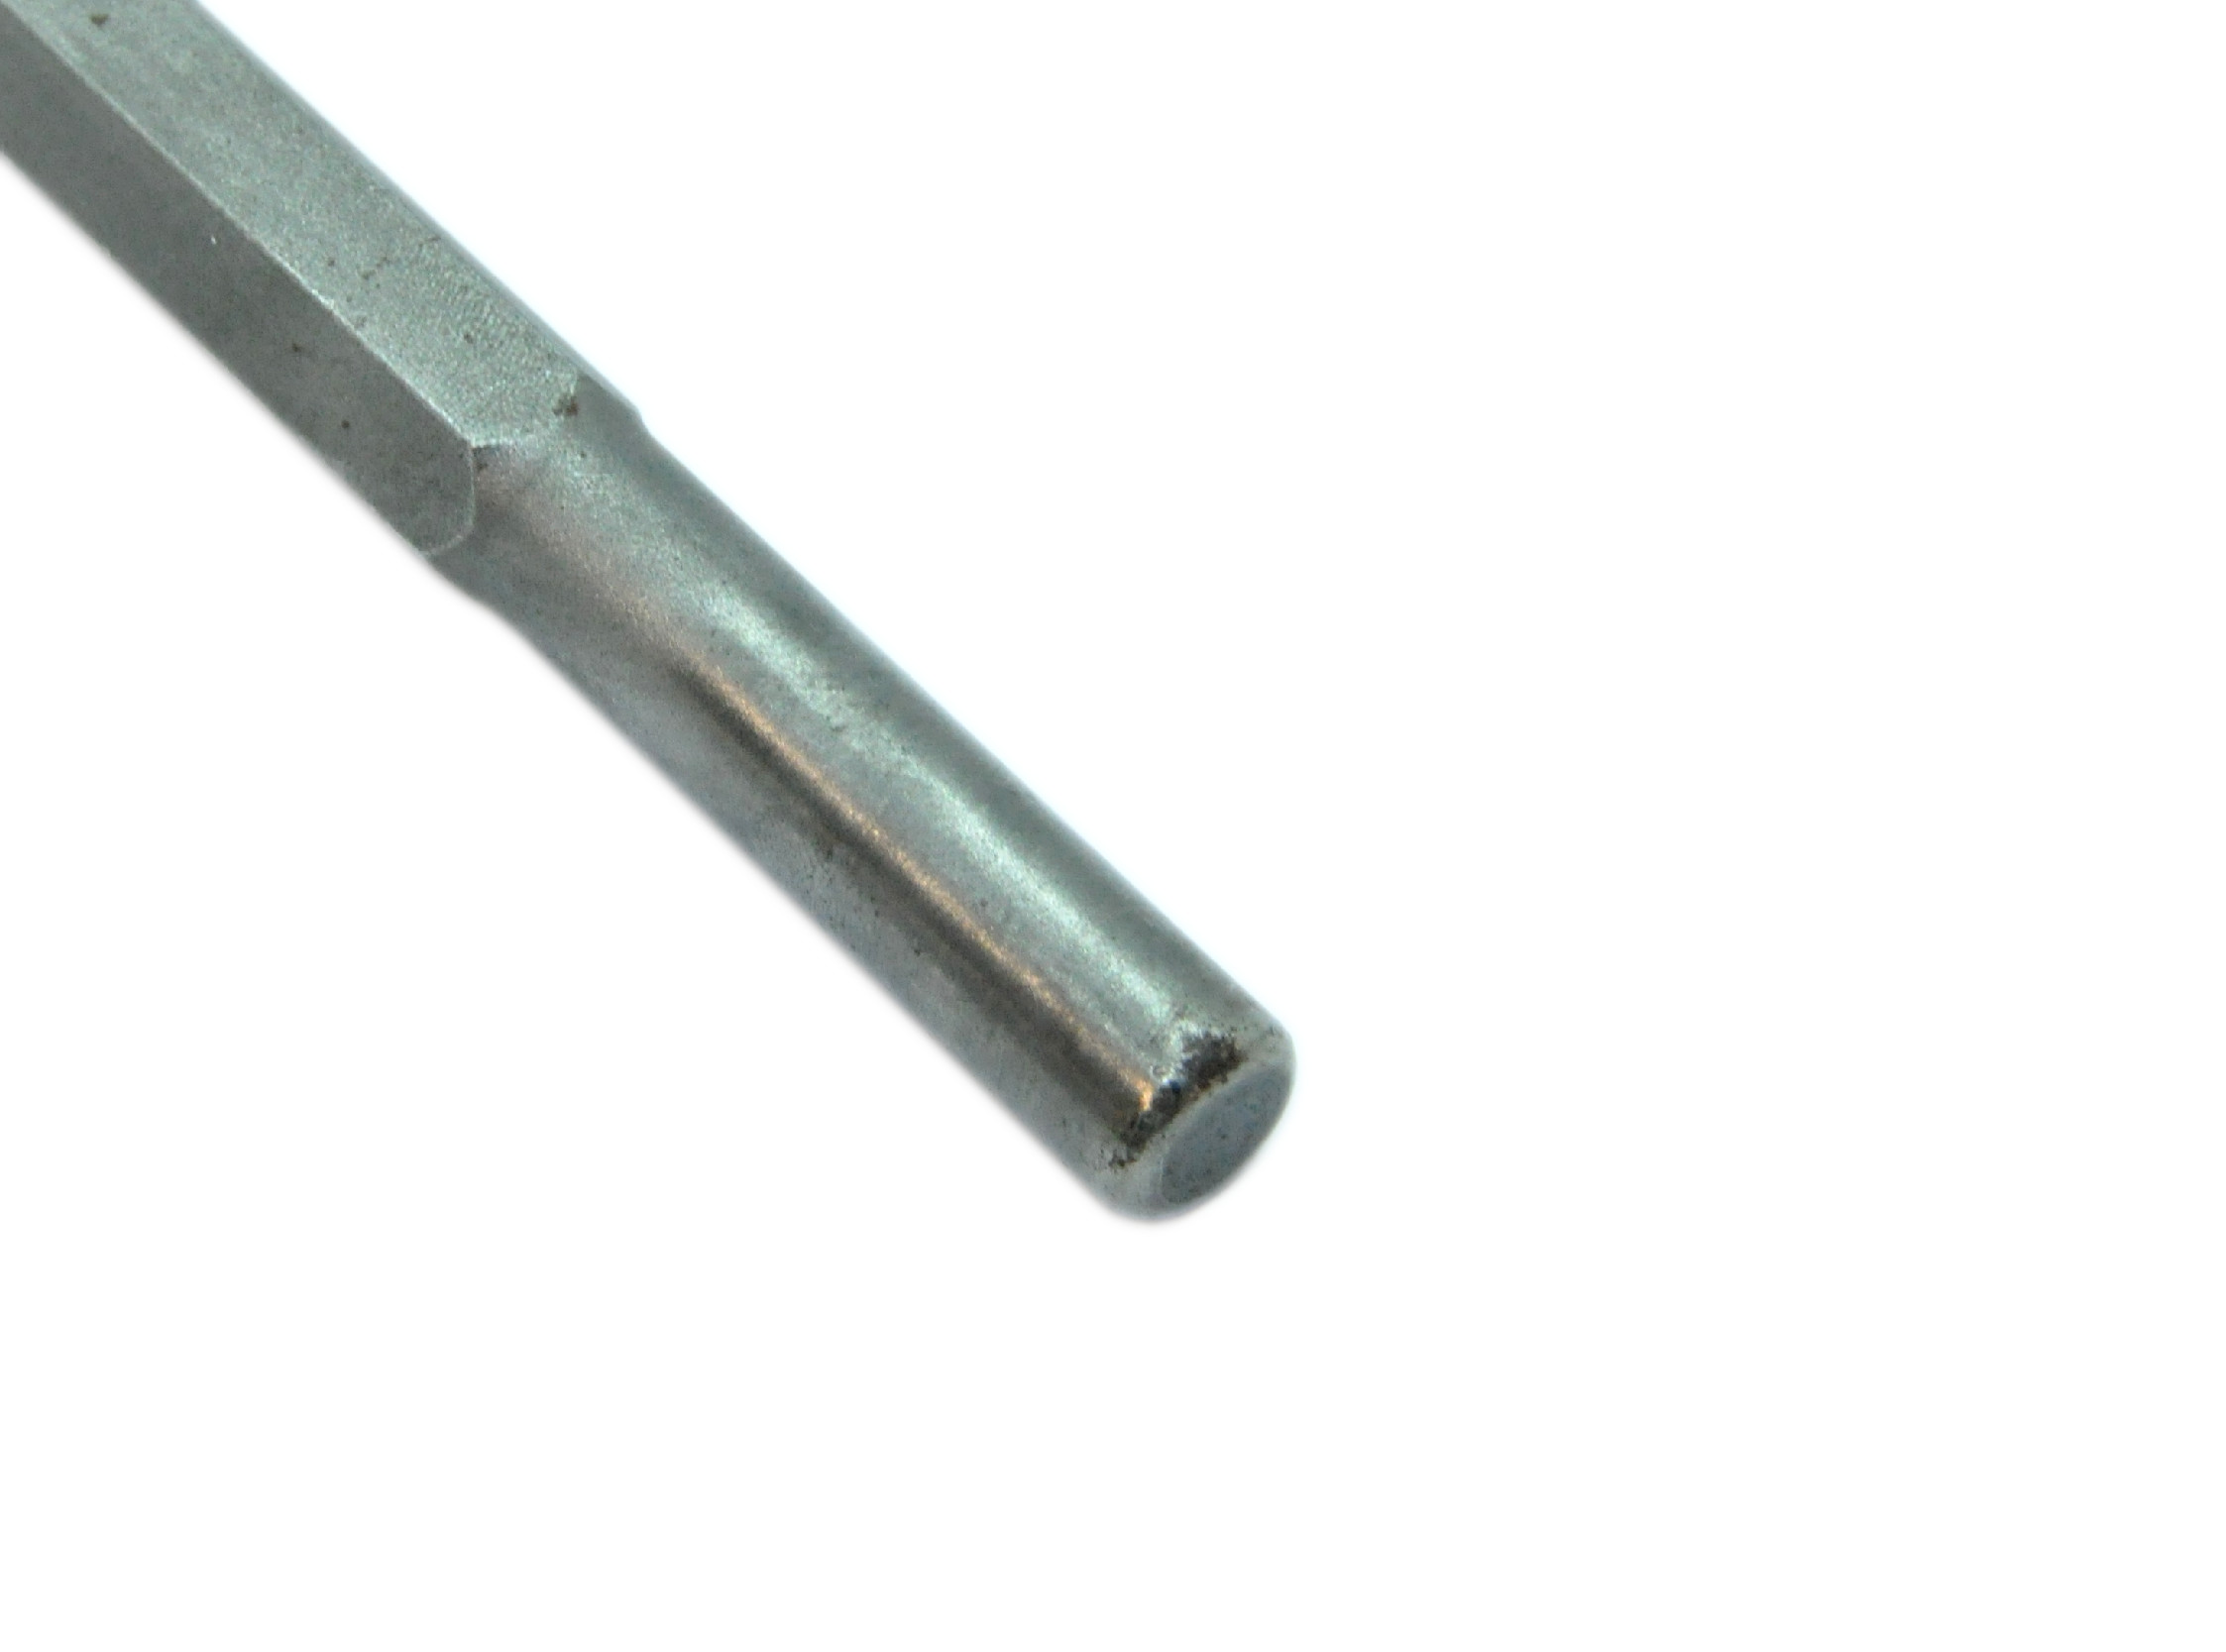 Grutec Pneumatische Beitel - G - Widia Schacht 12,7 mm